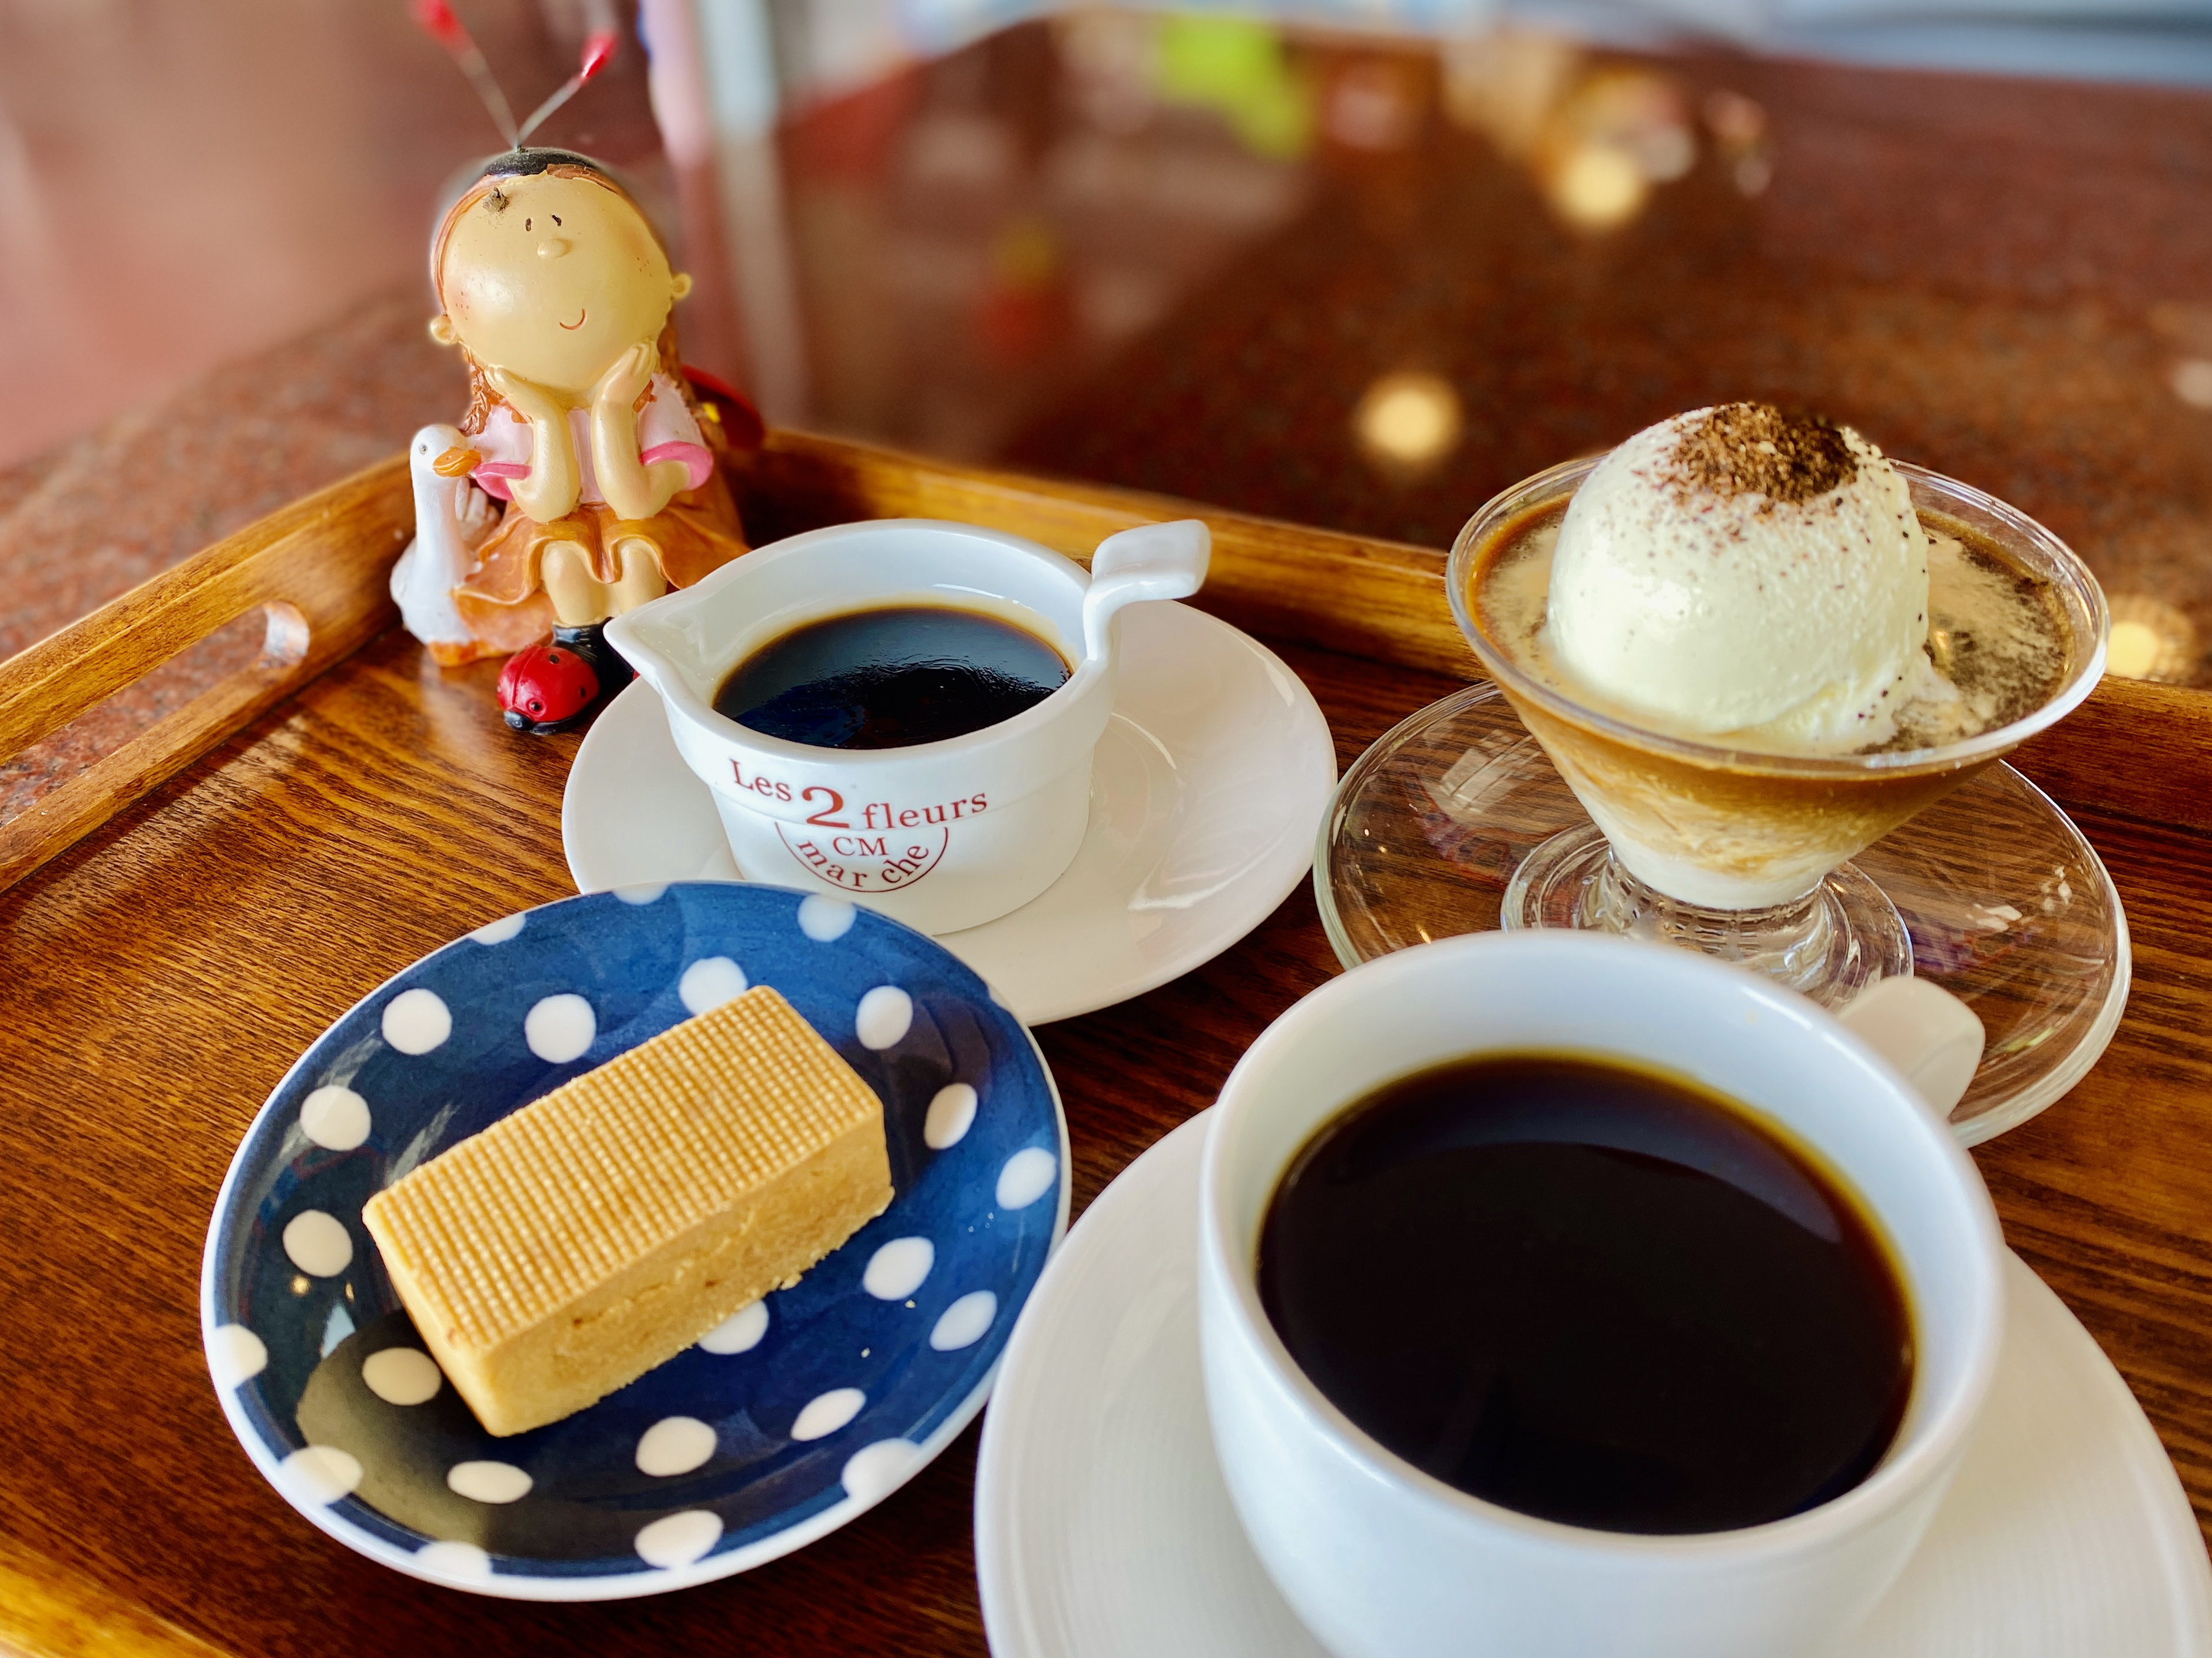 冰淇淋、咖啡凍、龍鳳酥、黑咖啡是下午茶不可錯過的四寶。